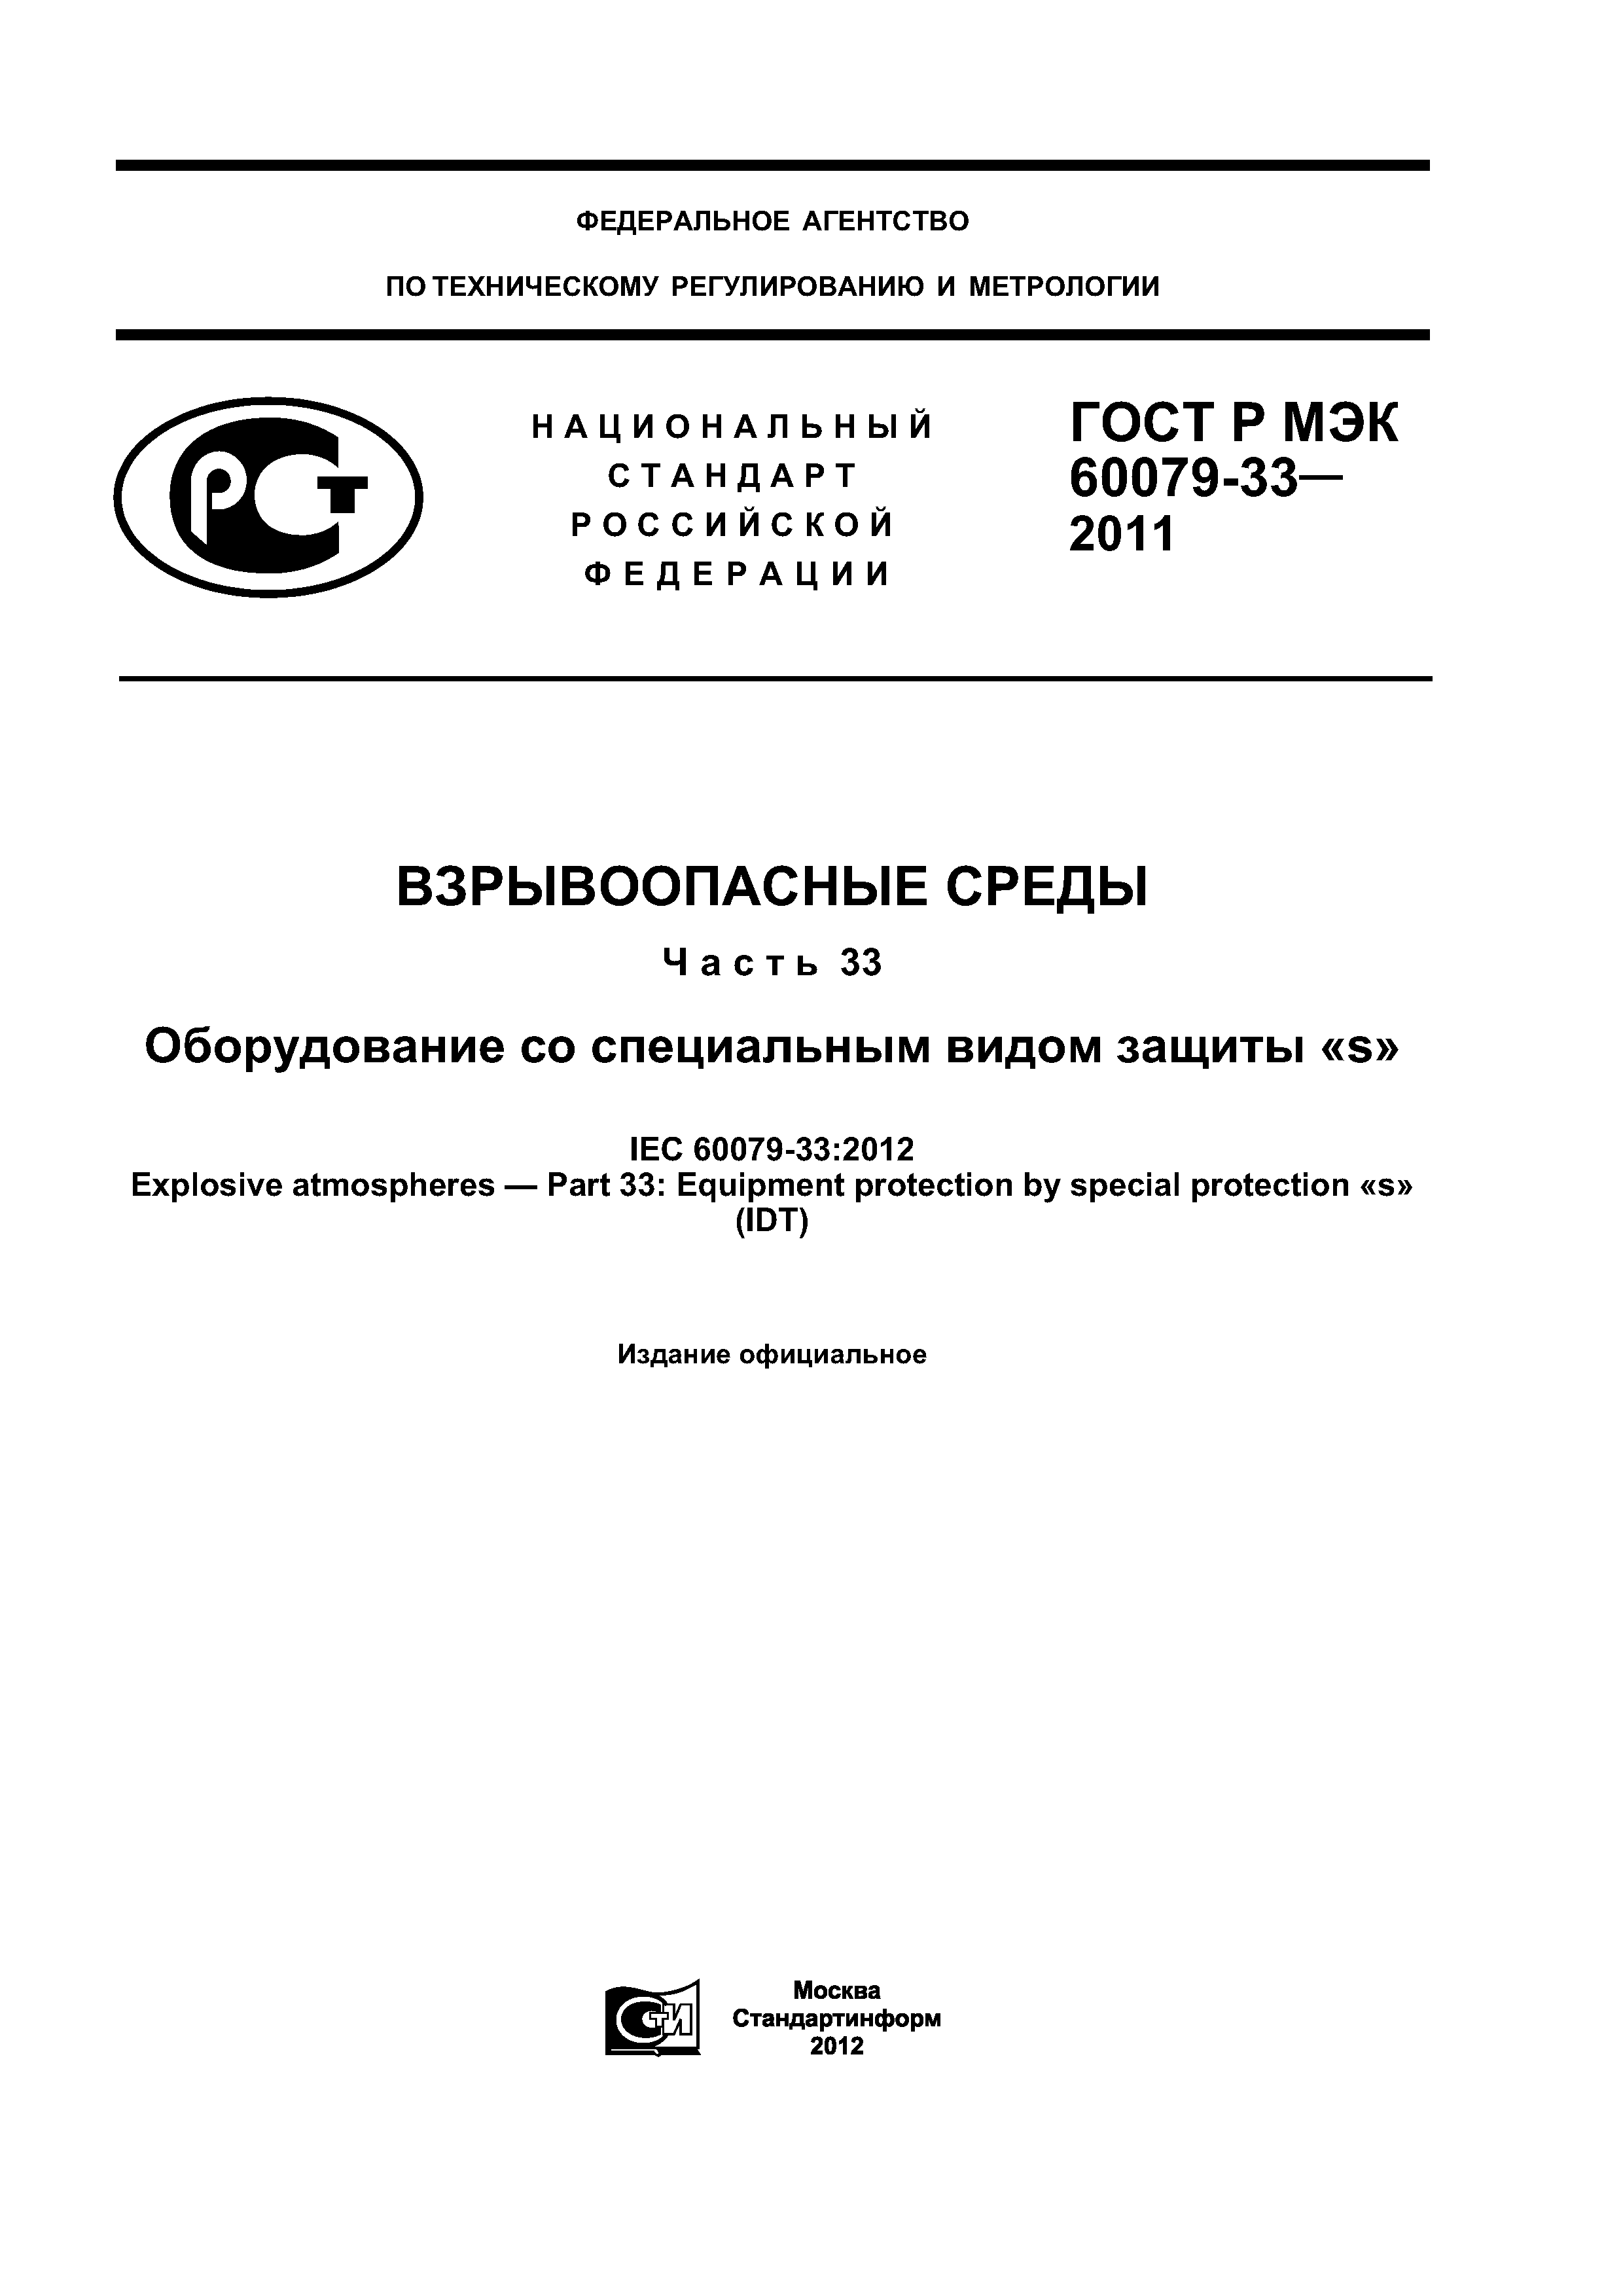 ГОСТ Р МЭК 60079-33-2011